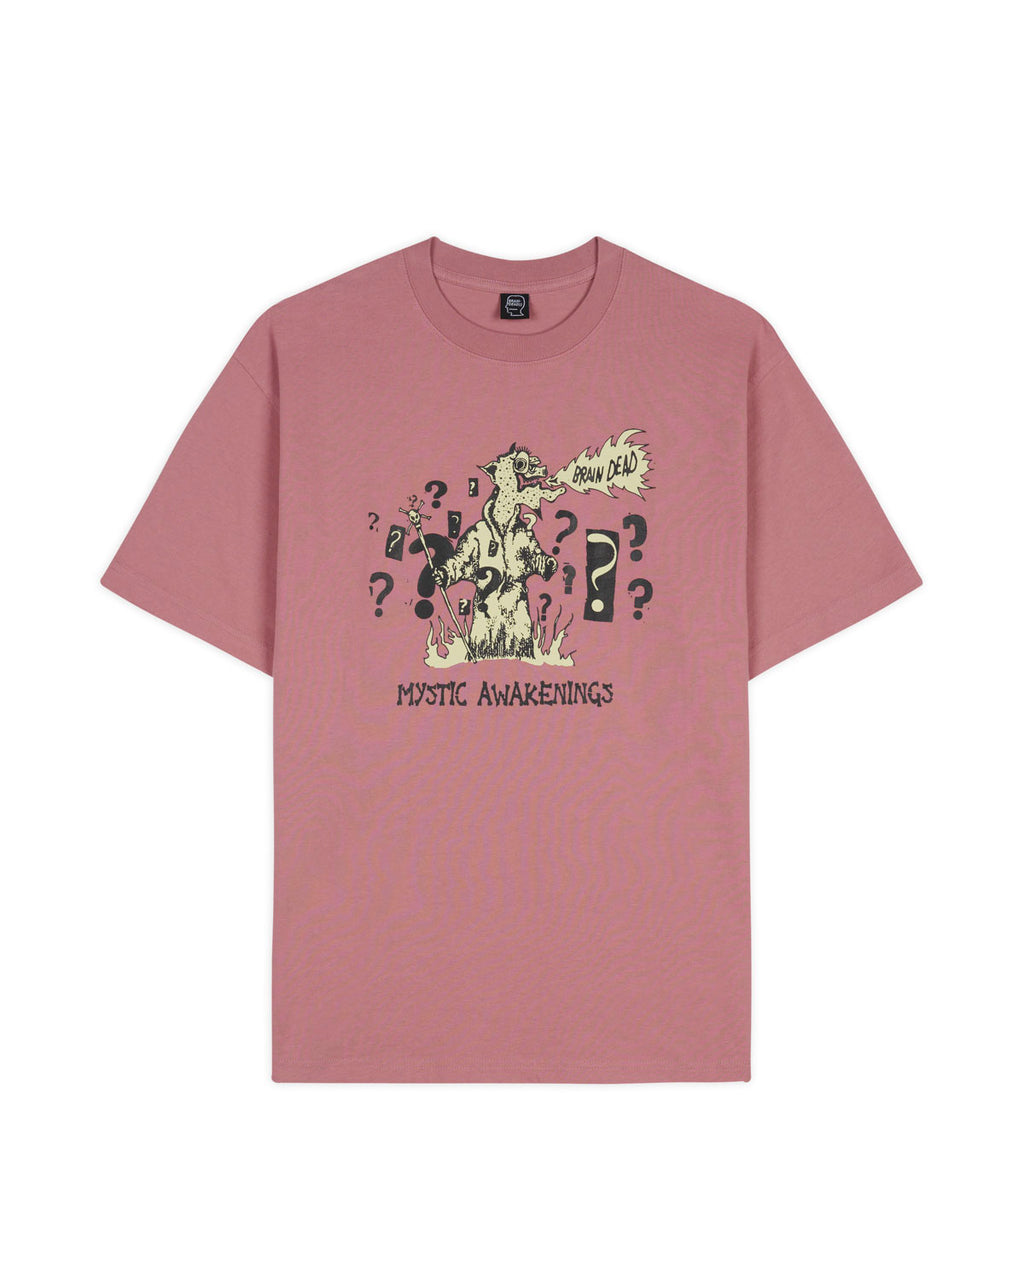 Mystic Awakenings T-shirt - Rose Taupe